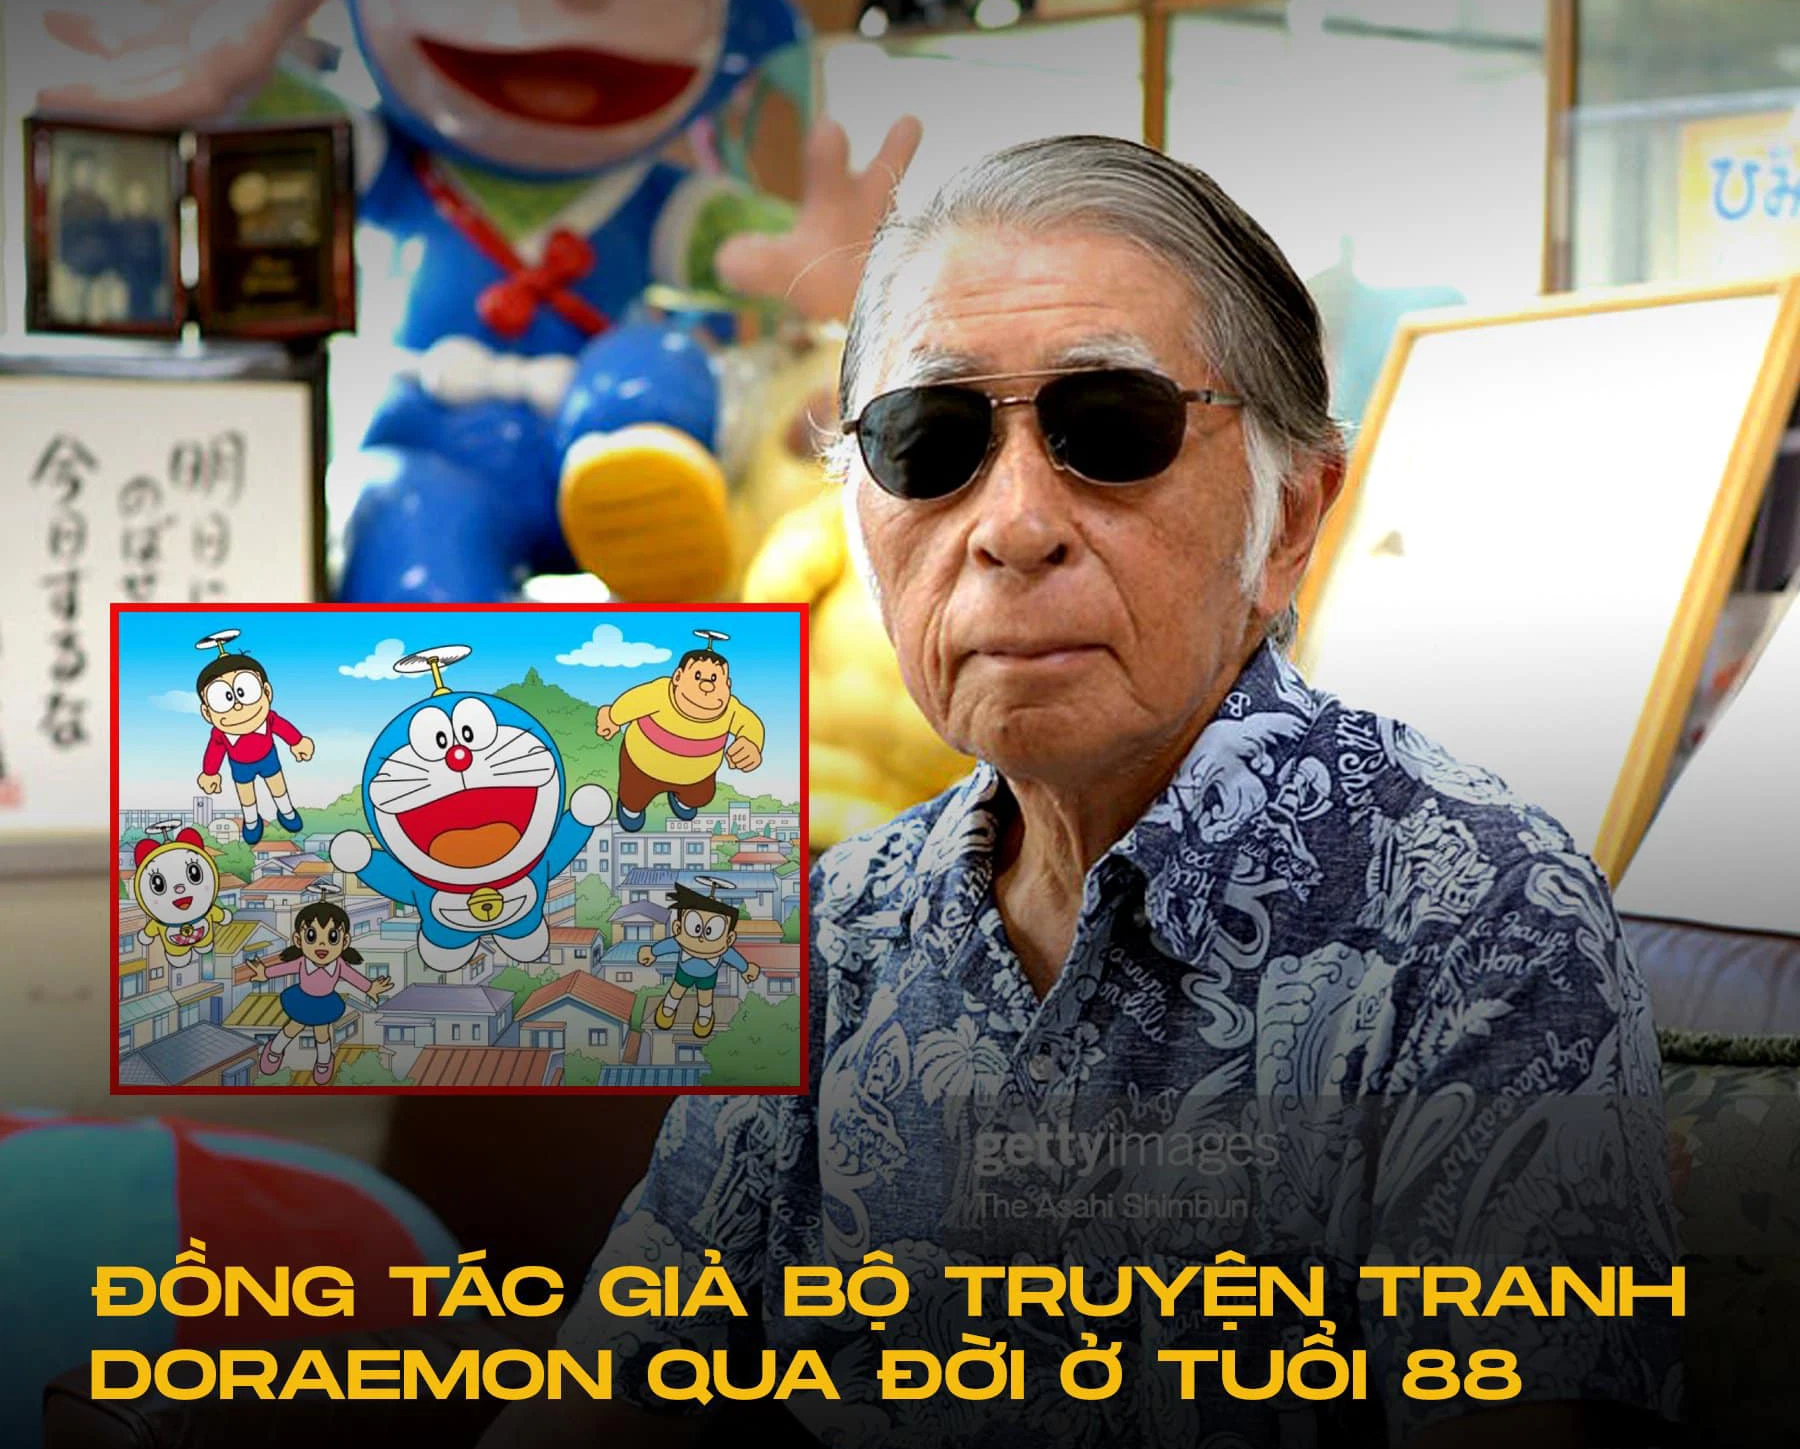 Với sự qua đời của đồng tác giả của Doraemon, chúng ta đã để lại những bộ truyện cực kỳ ý nghĩa và tuyệt vời. Hãy xem tập hình này để tưởng nhớ và tìm hiểu thêm về cuộc đời và tác phẩm của đồng tác giả đã ra đi.